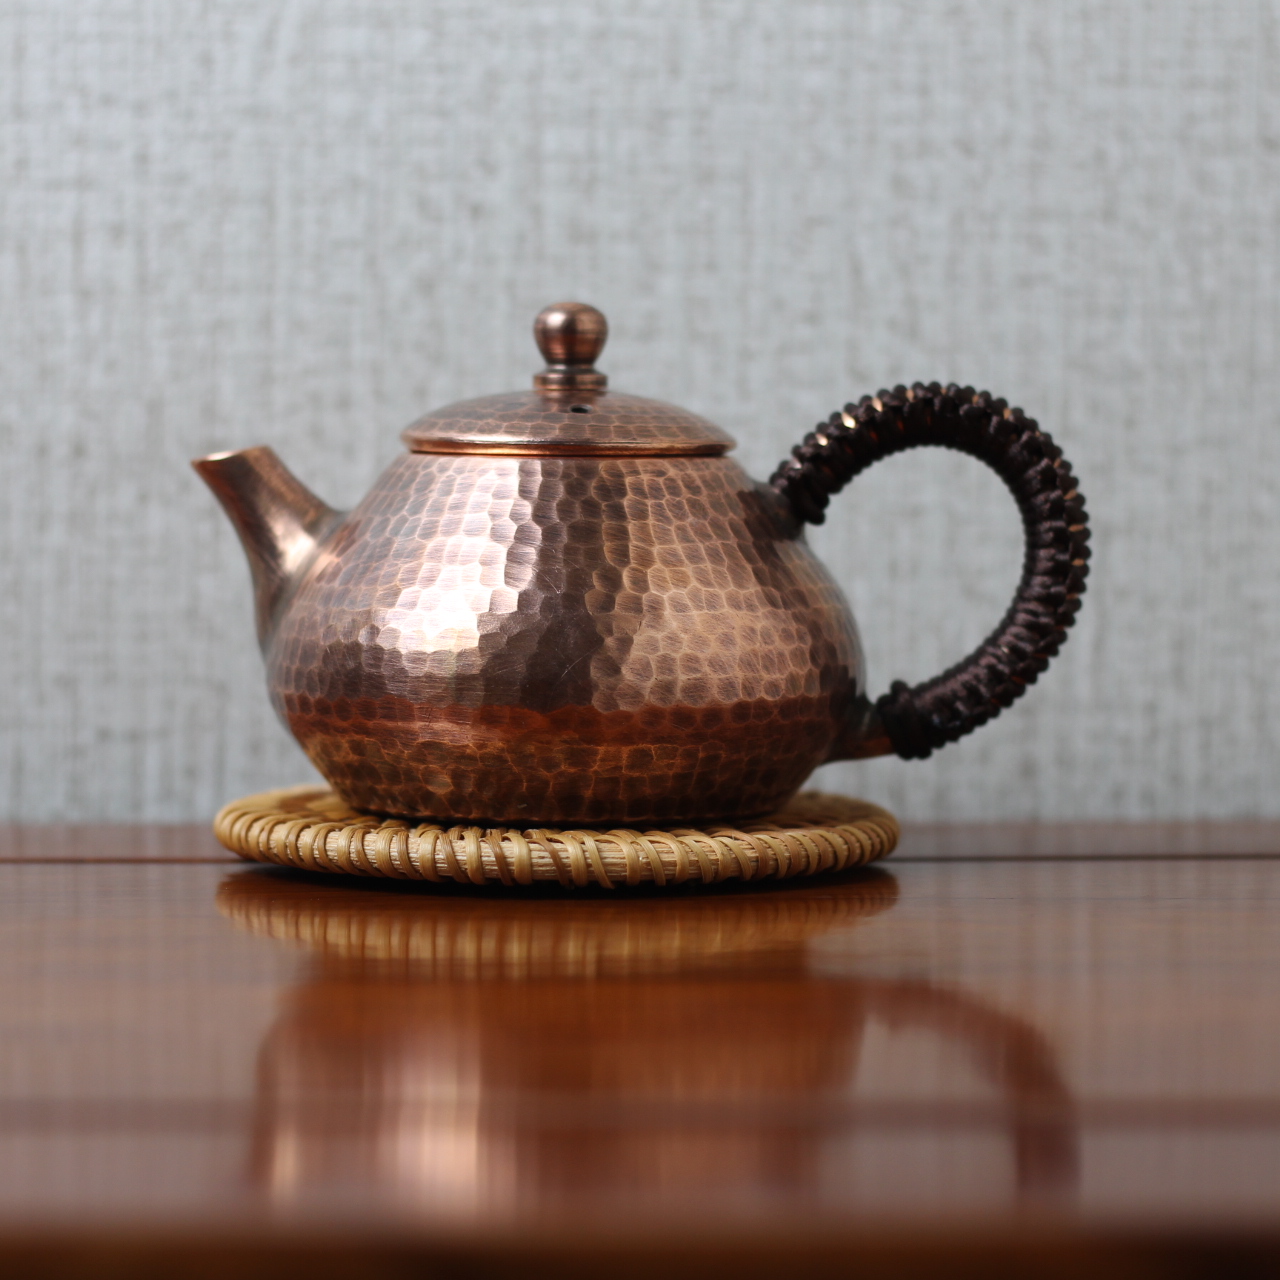 五六十年代铜茶壶铜壶，完整，做工好，细节处理完美，皮色包浆一流，大气美观，工艺-价格:388元-se89914496-铜壶/铜瓶-零售 ...